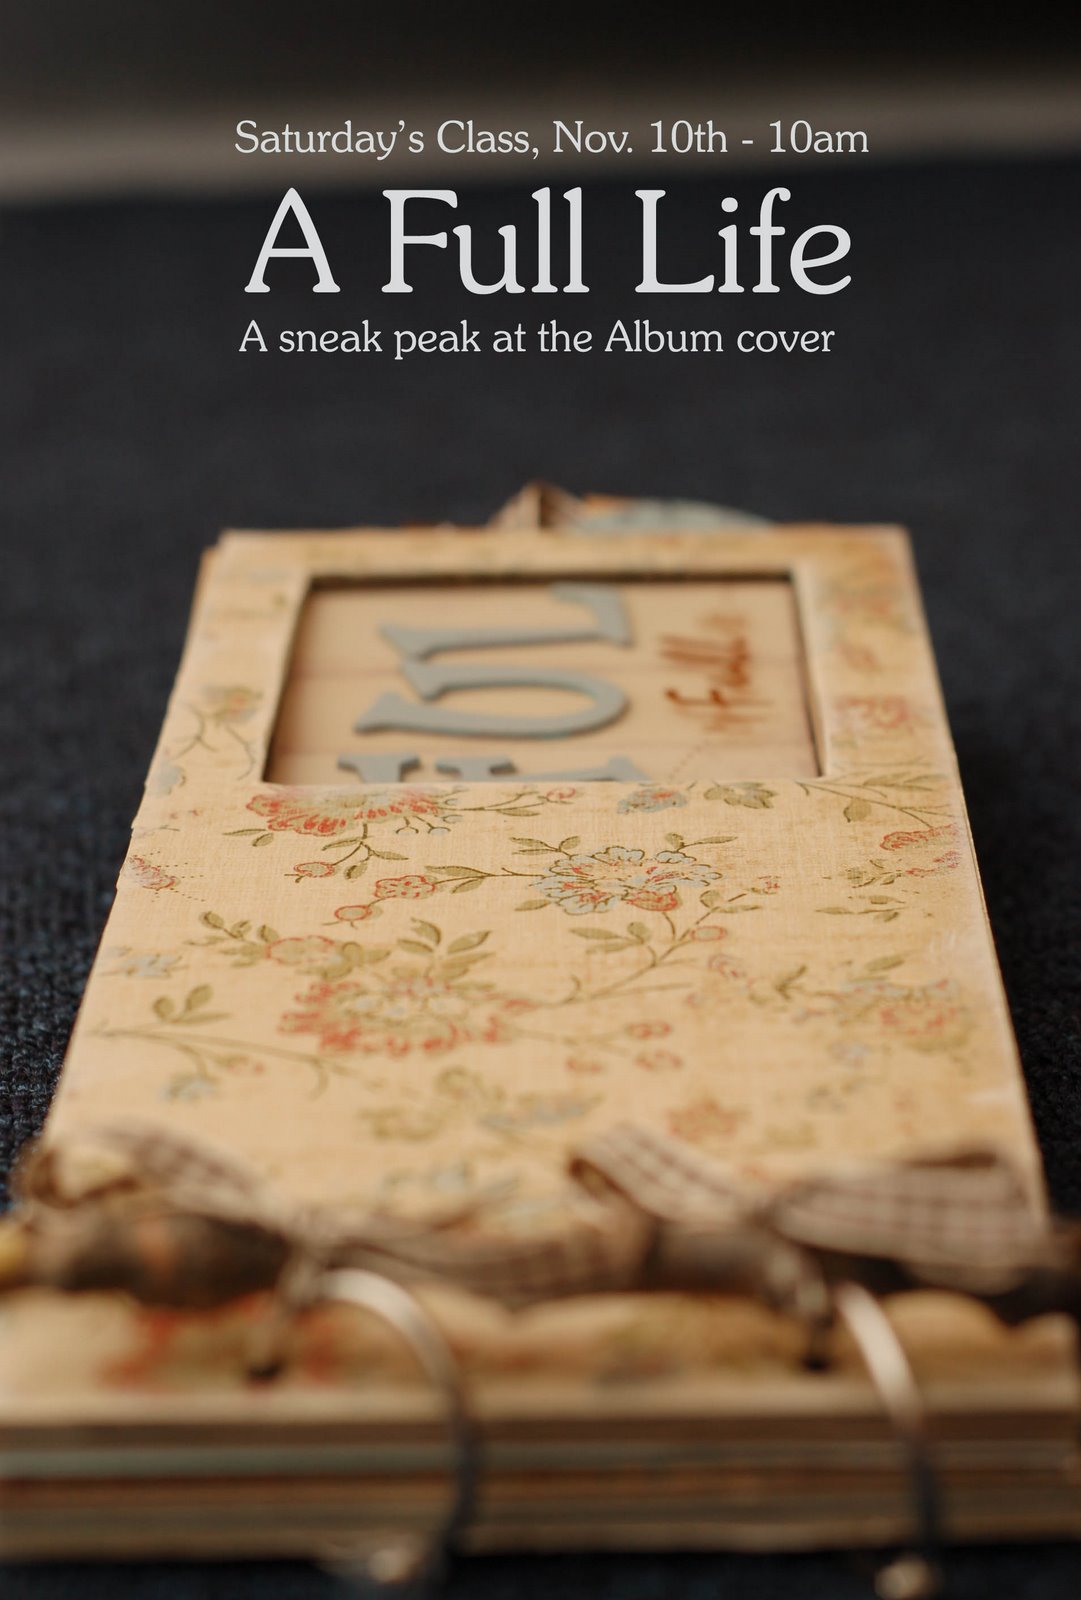 [A+full+life+cover.jpg]